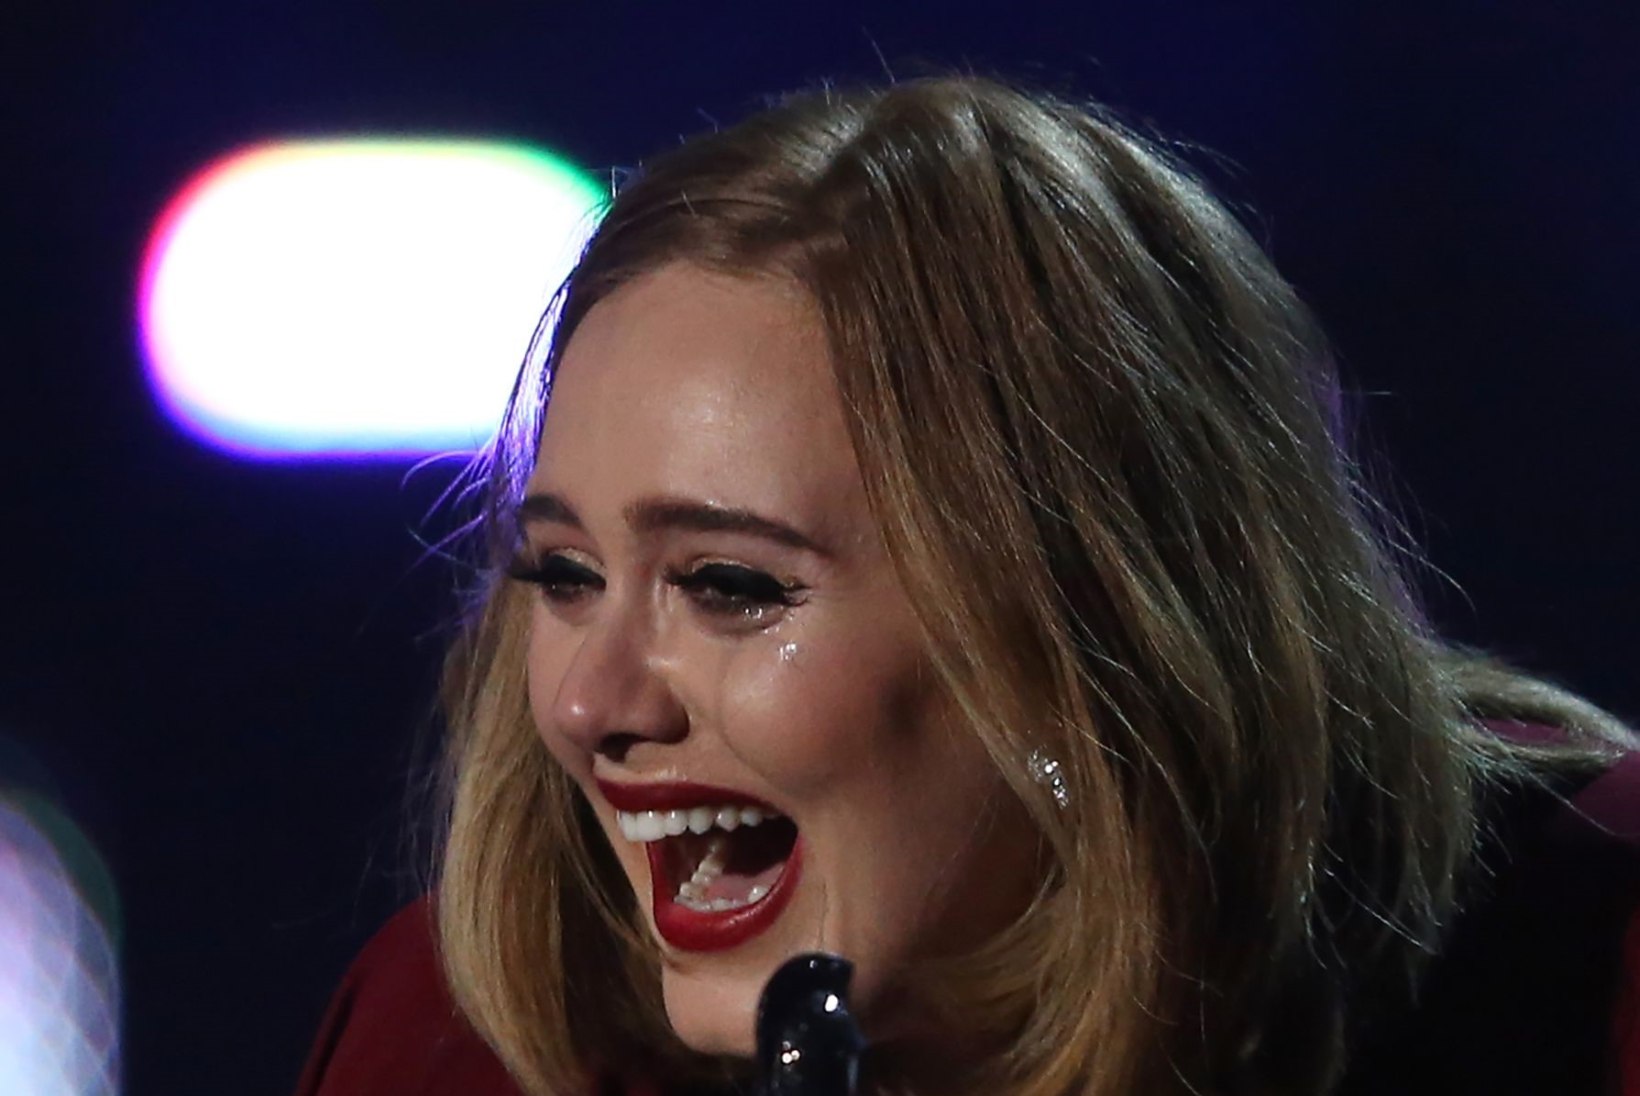 Briti muusikaauhindade jagamise kuninganna oli Adele